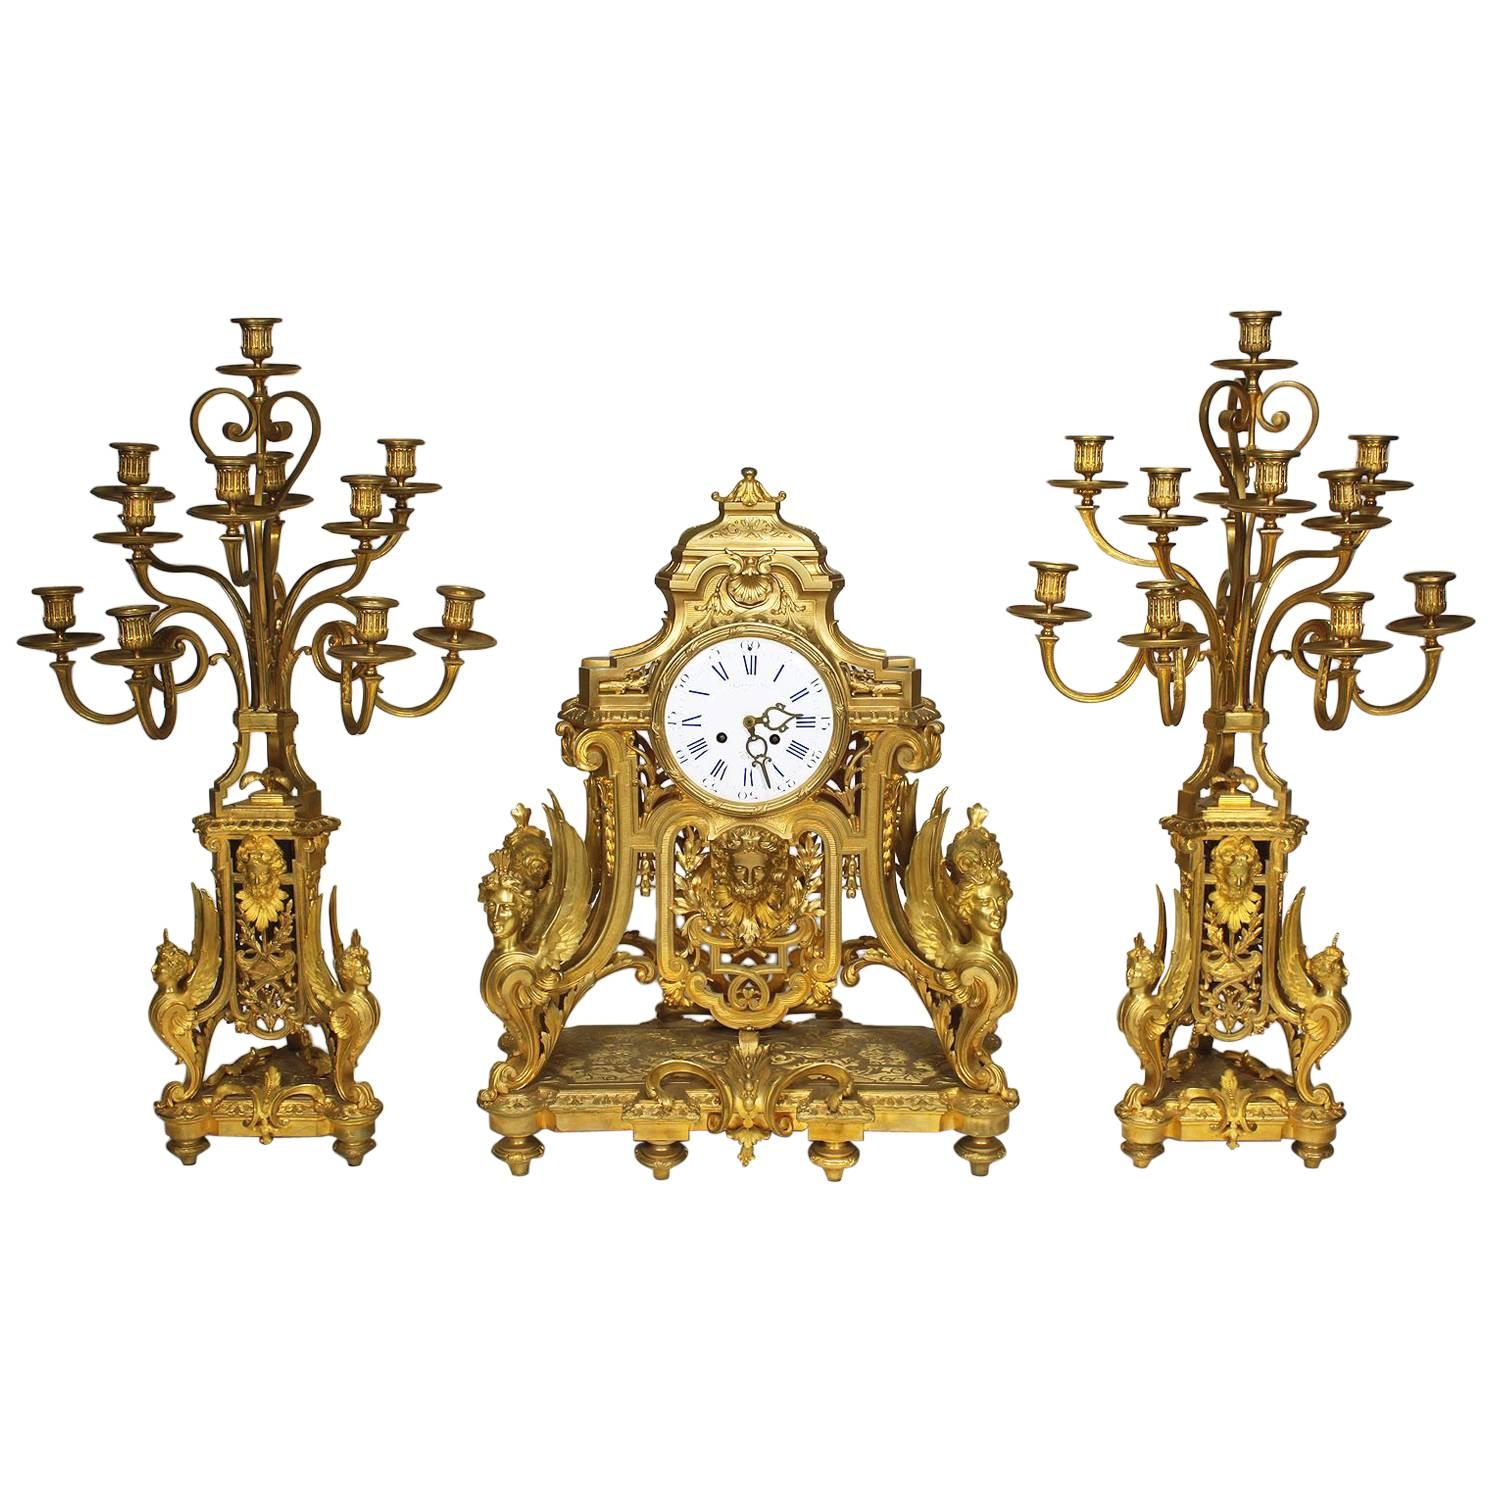 Garniture d'horloge figurative en bronze doré de style Louis XIV du 19ème siècle, Raingo Frers